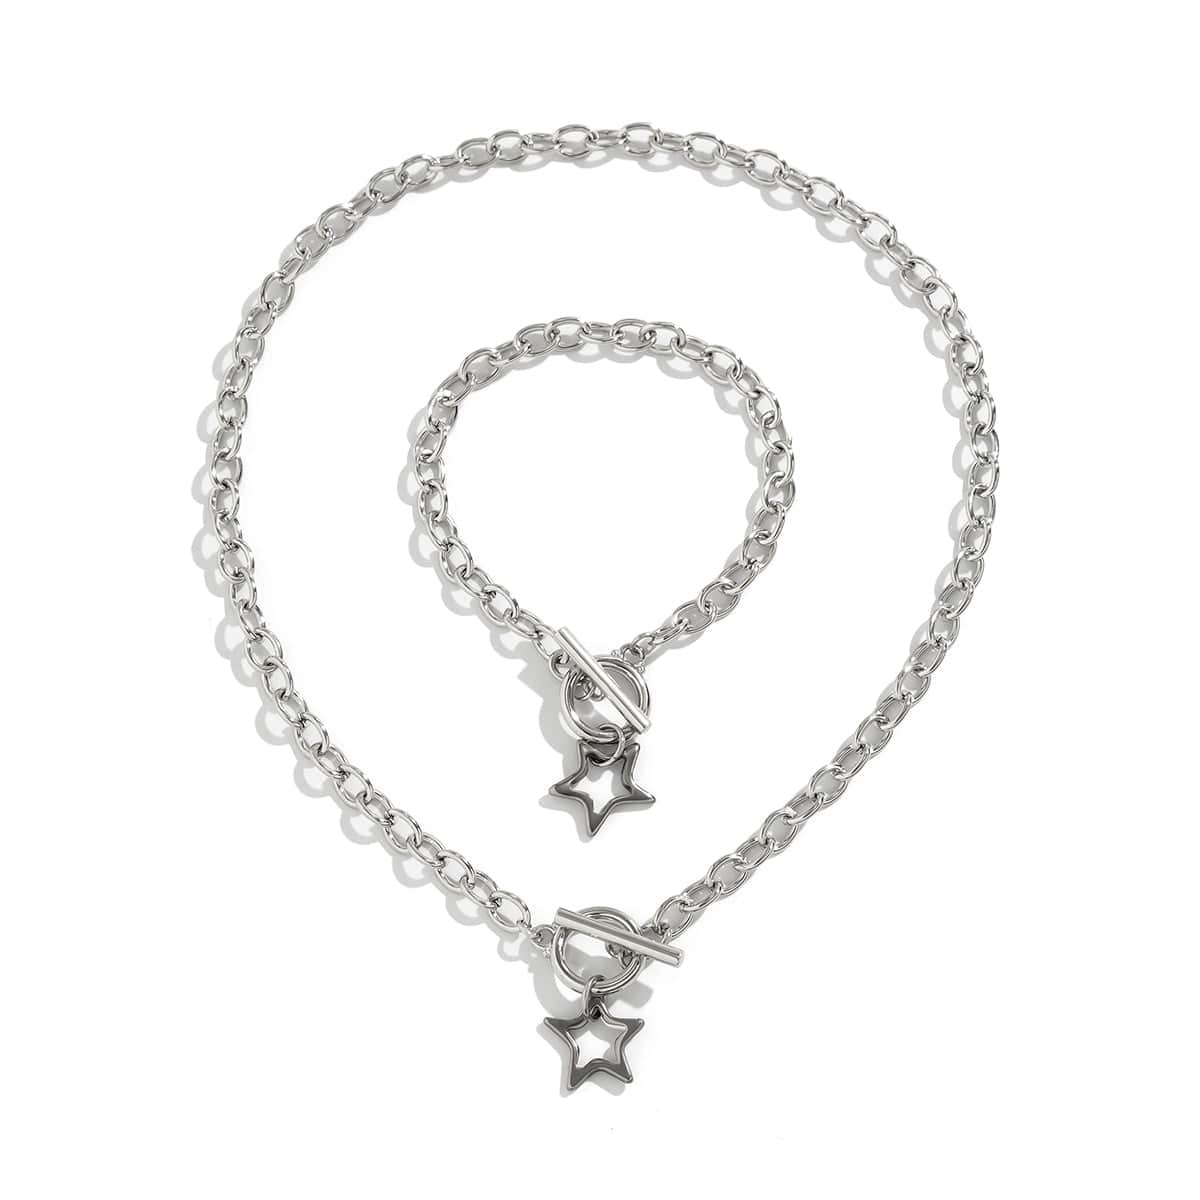 Trendy Toggle Clasp Hollow Star Pendant Cable Chain Necklace Bracelet Set - ArtGalleryZen